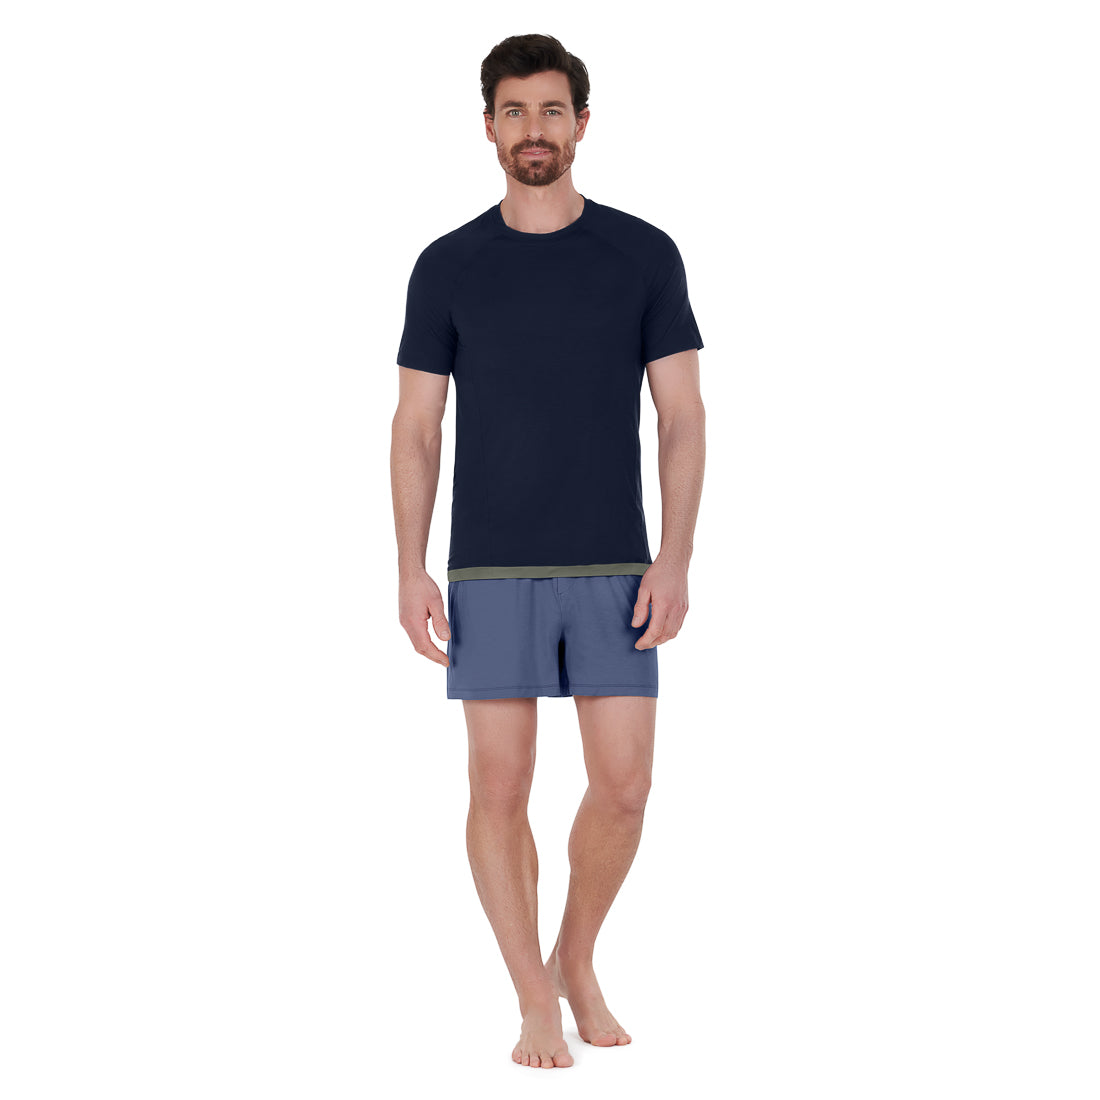 Cooling sleepwear men || Coastal blue